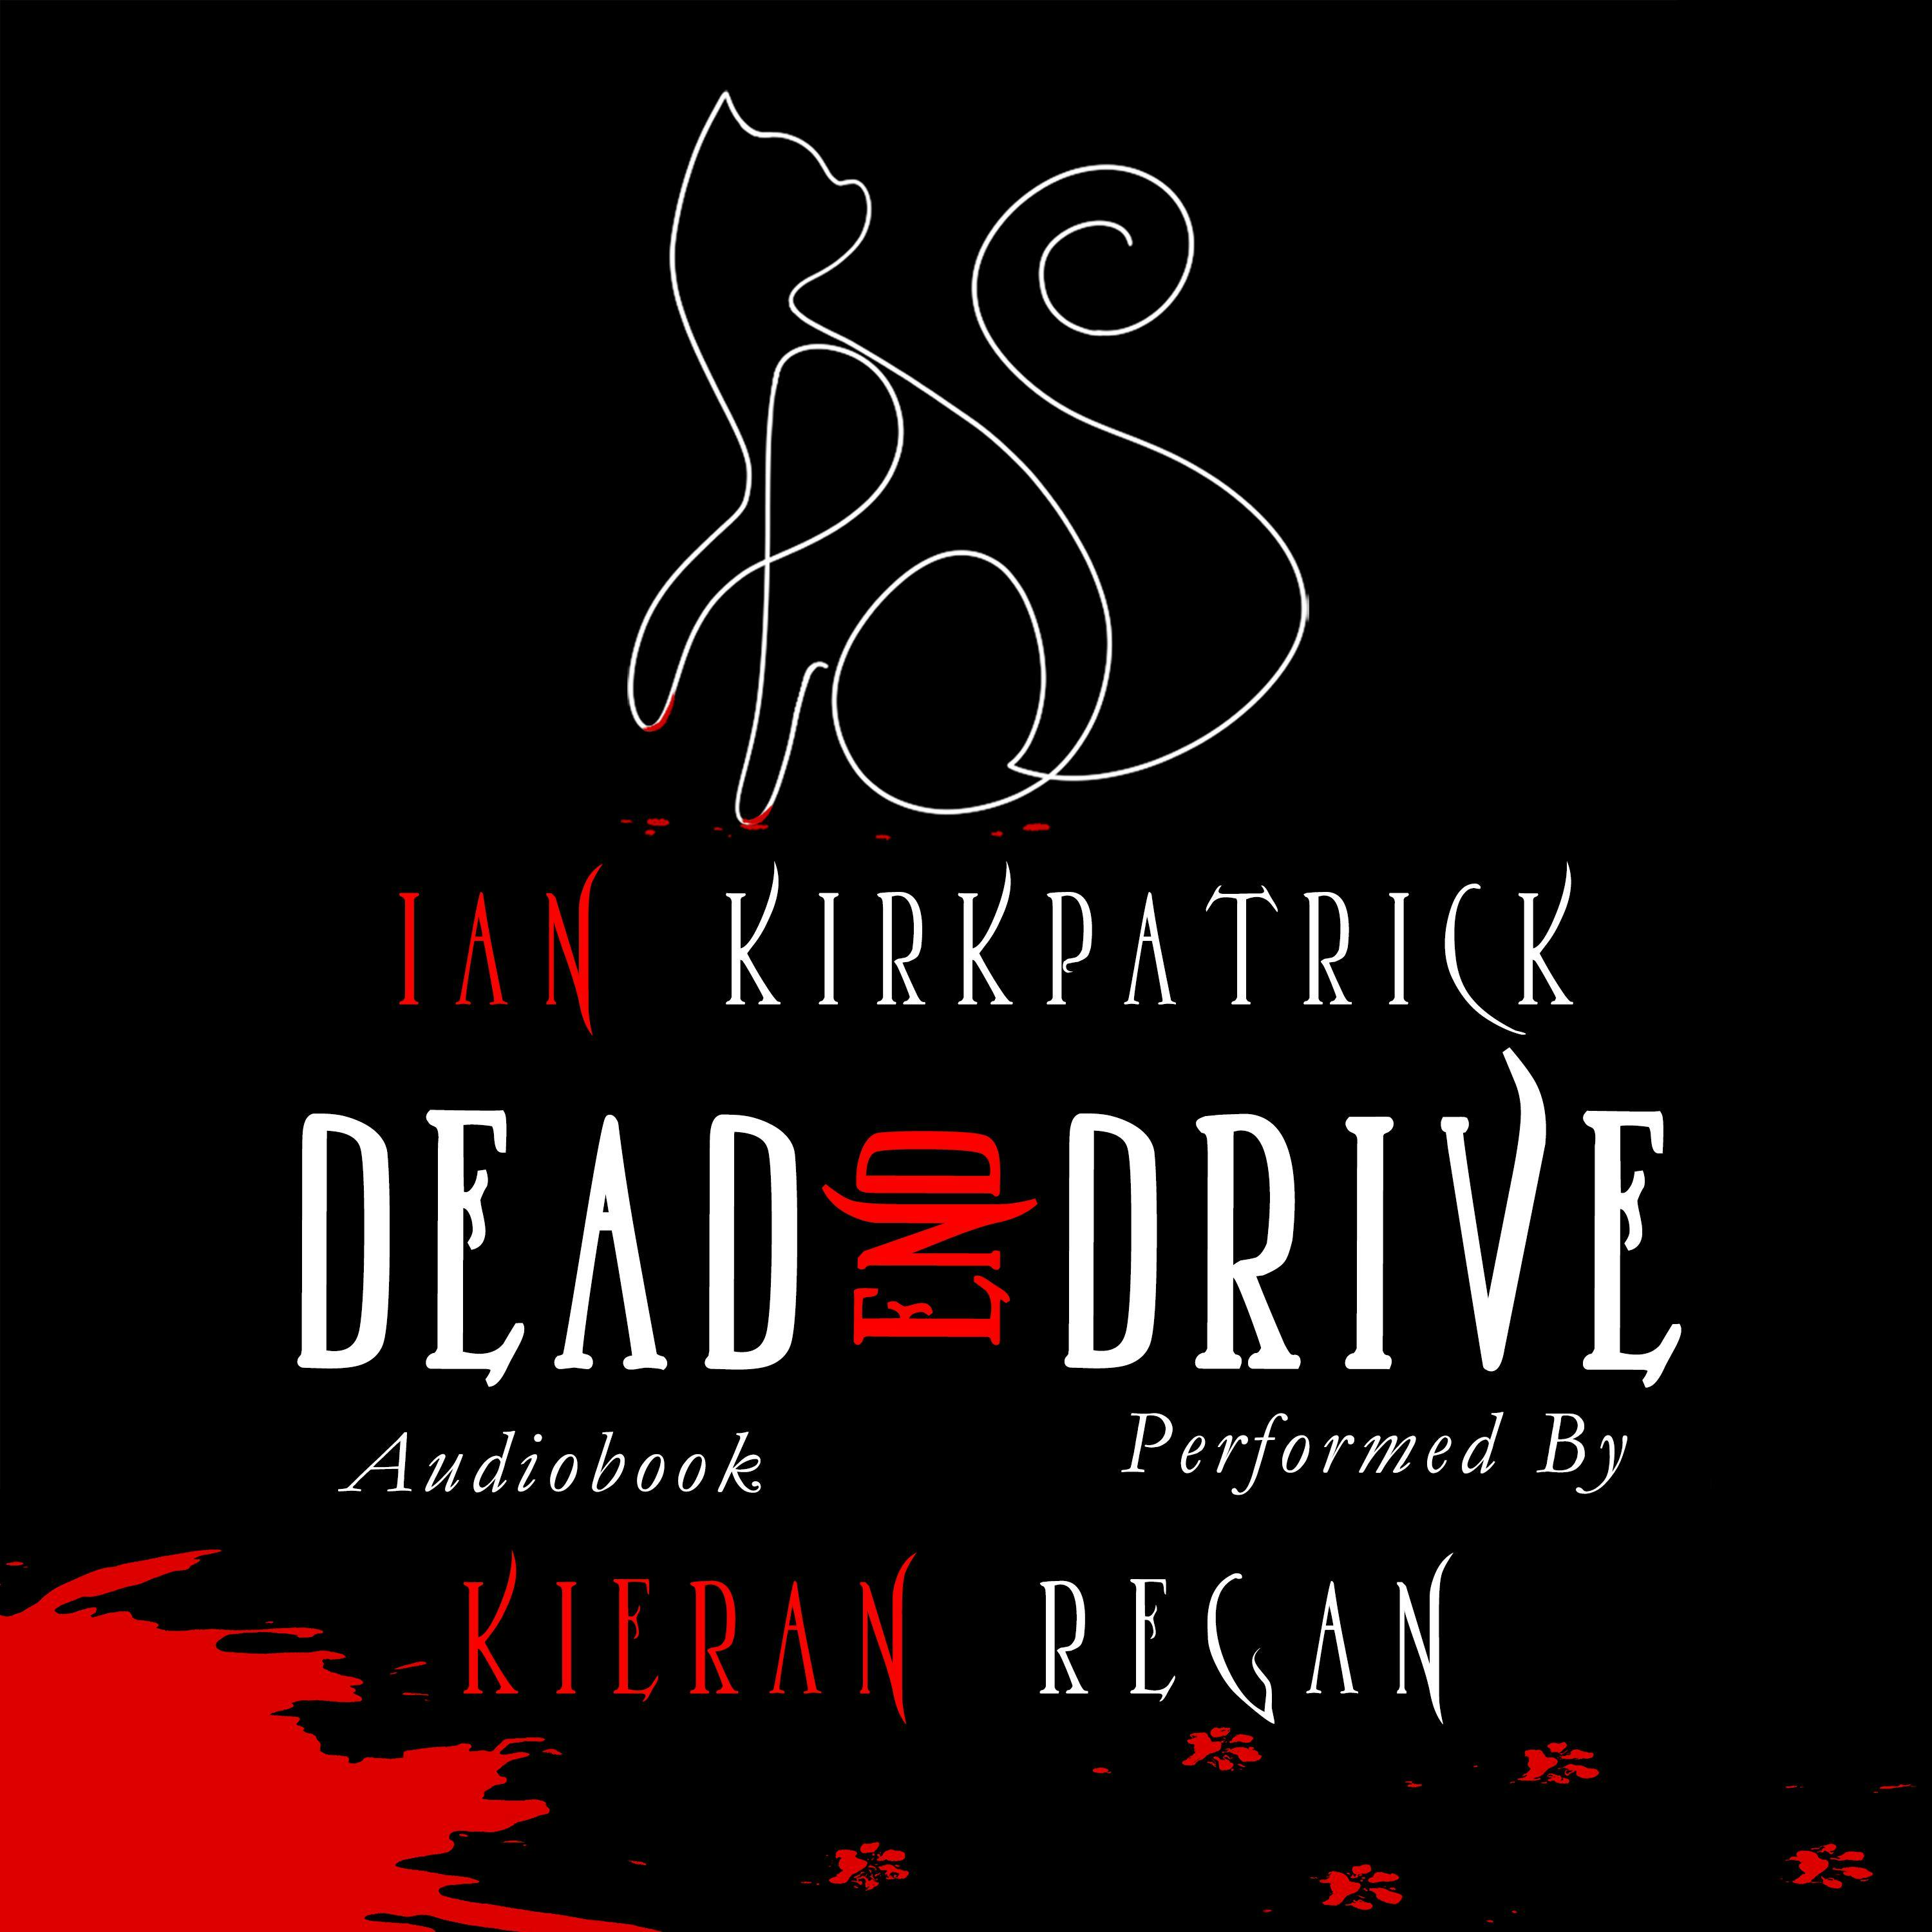 Dead End Drive - Ian Kirkpatrick